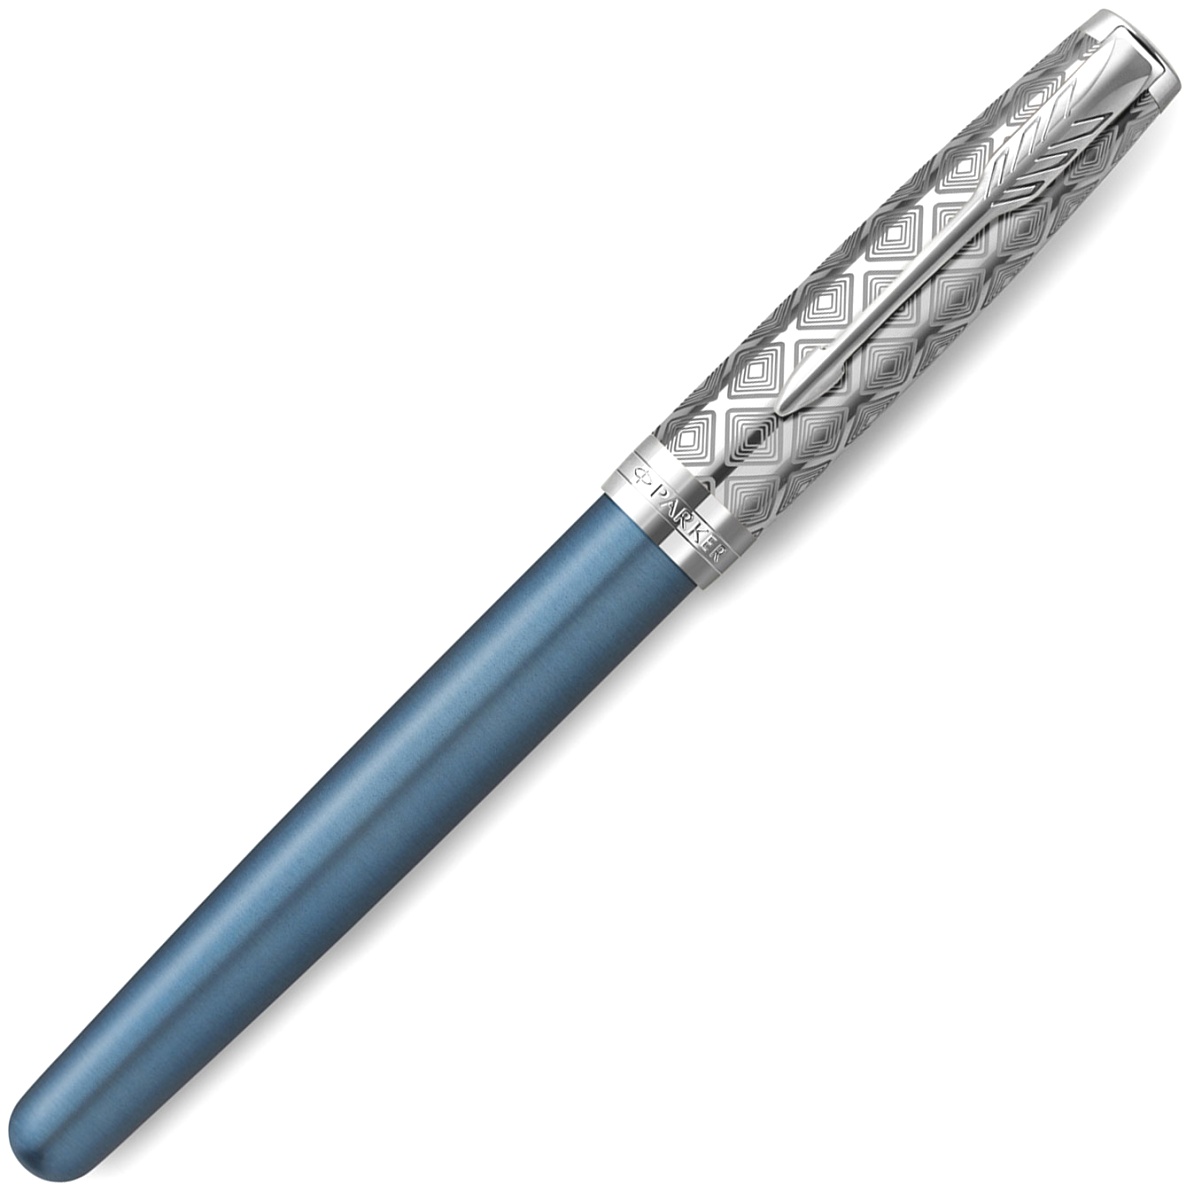  Ручка-роллер Parker Sonnet Premium T537, Metal Blue CT, фото 2